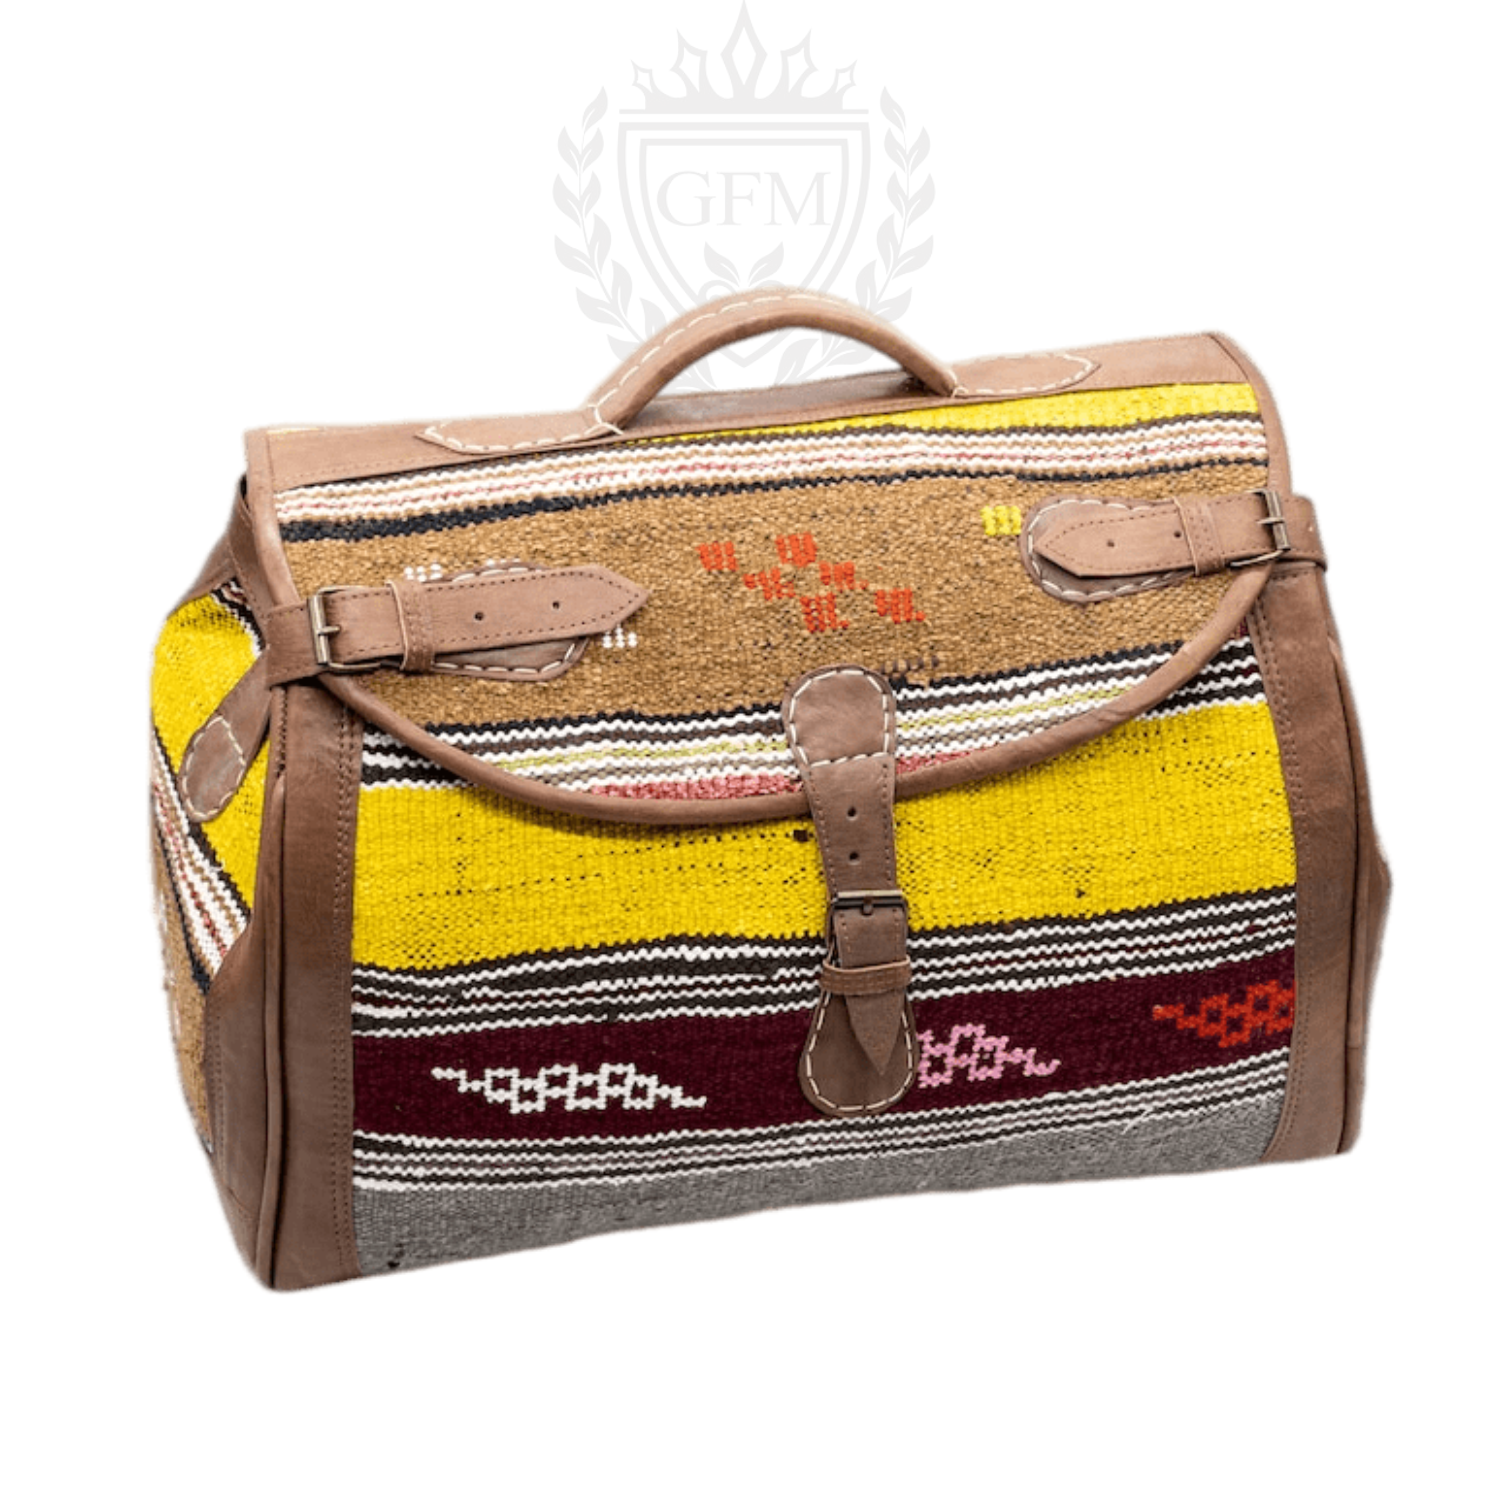 Handmade Moroccan Kilim Leather Weekender Bag - Vintage Bohemian Travel Duffel